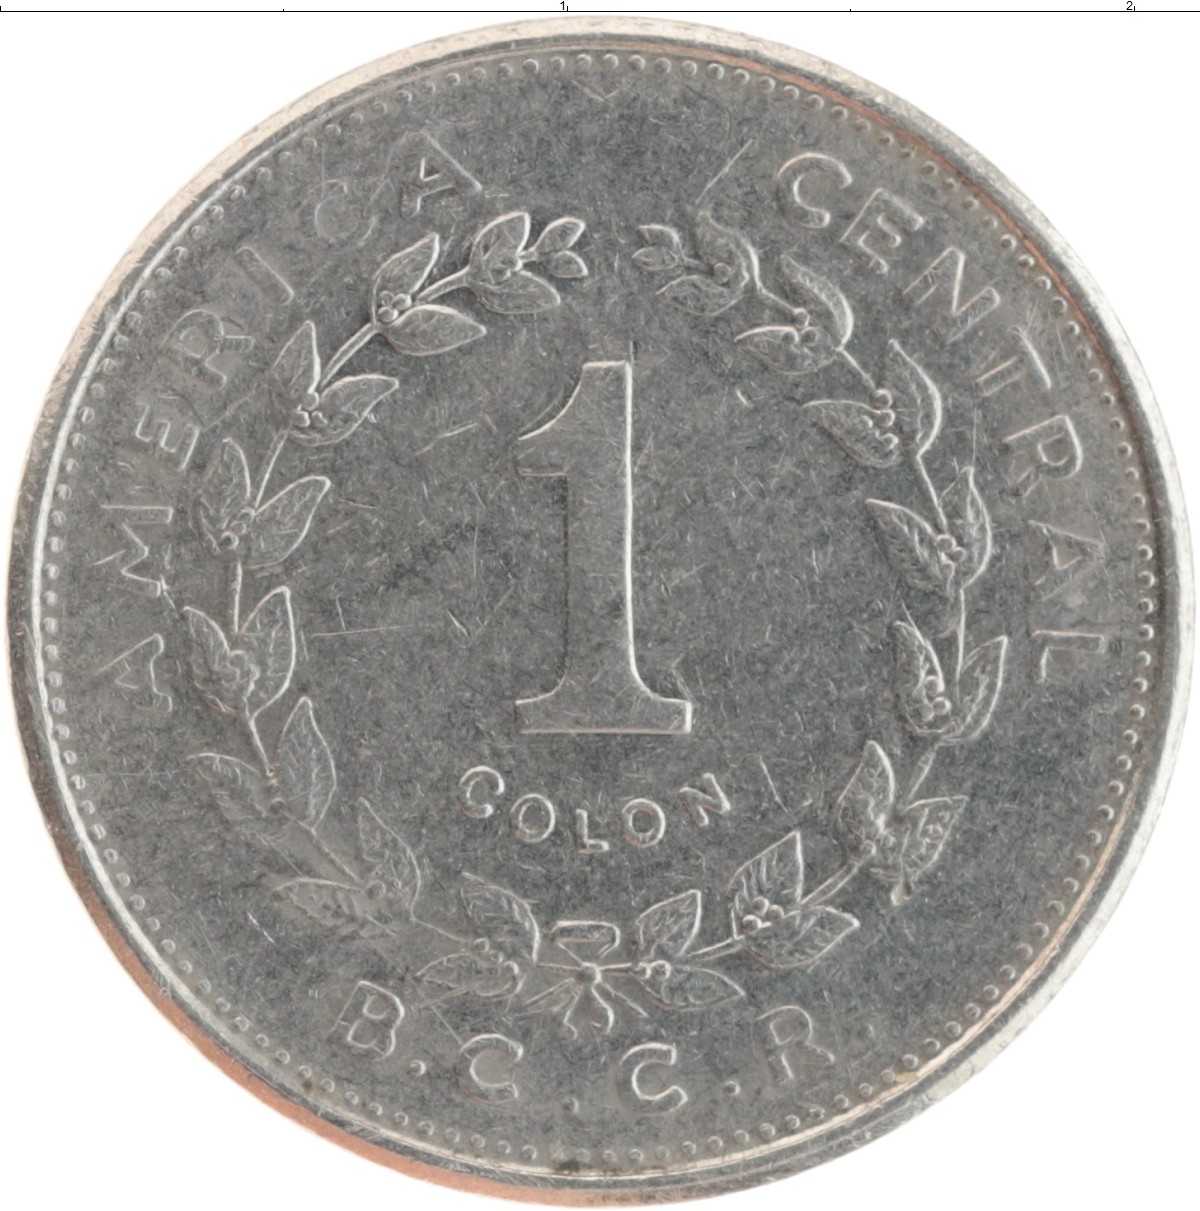 Монеты 1984 года стоимость. 1 Колон 1984 Коста-Рика. Монета 1 колон. Монета 1984 медная. Коста Рика 1 колон 1917.